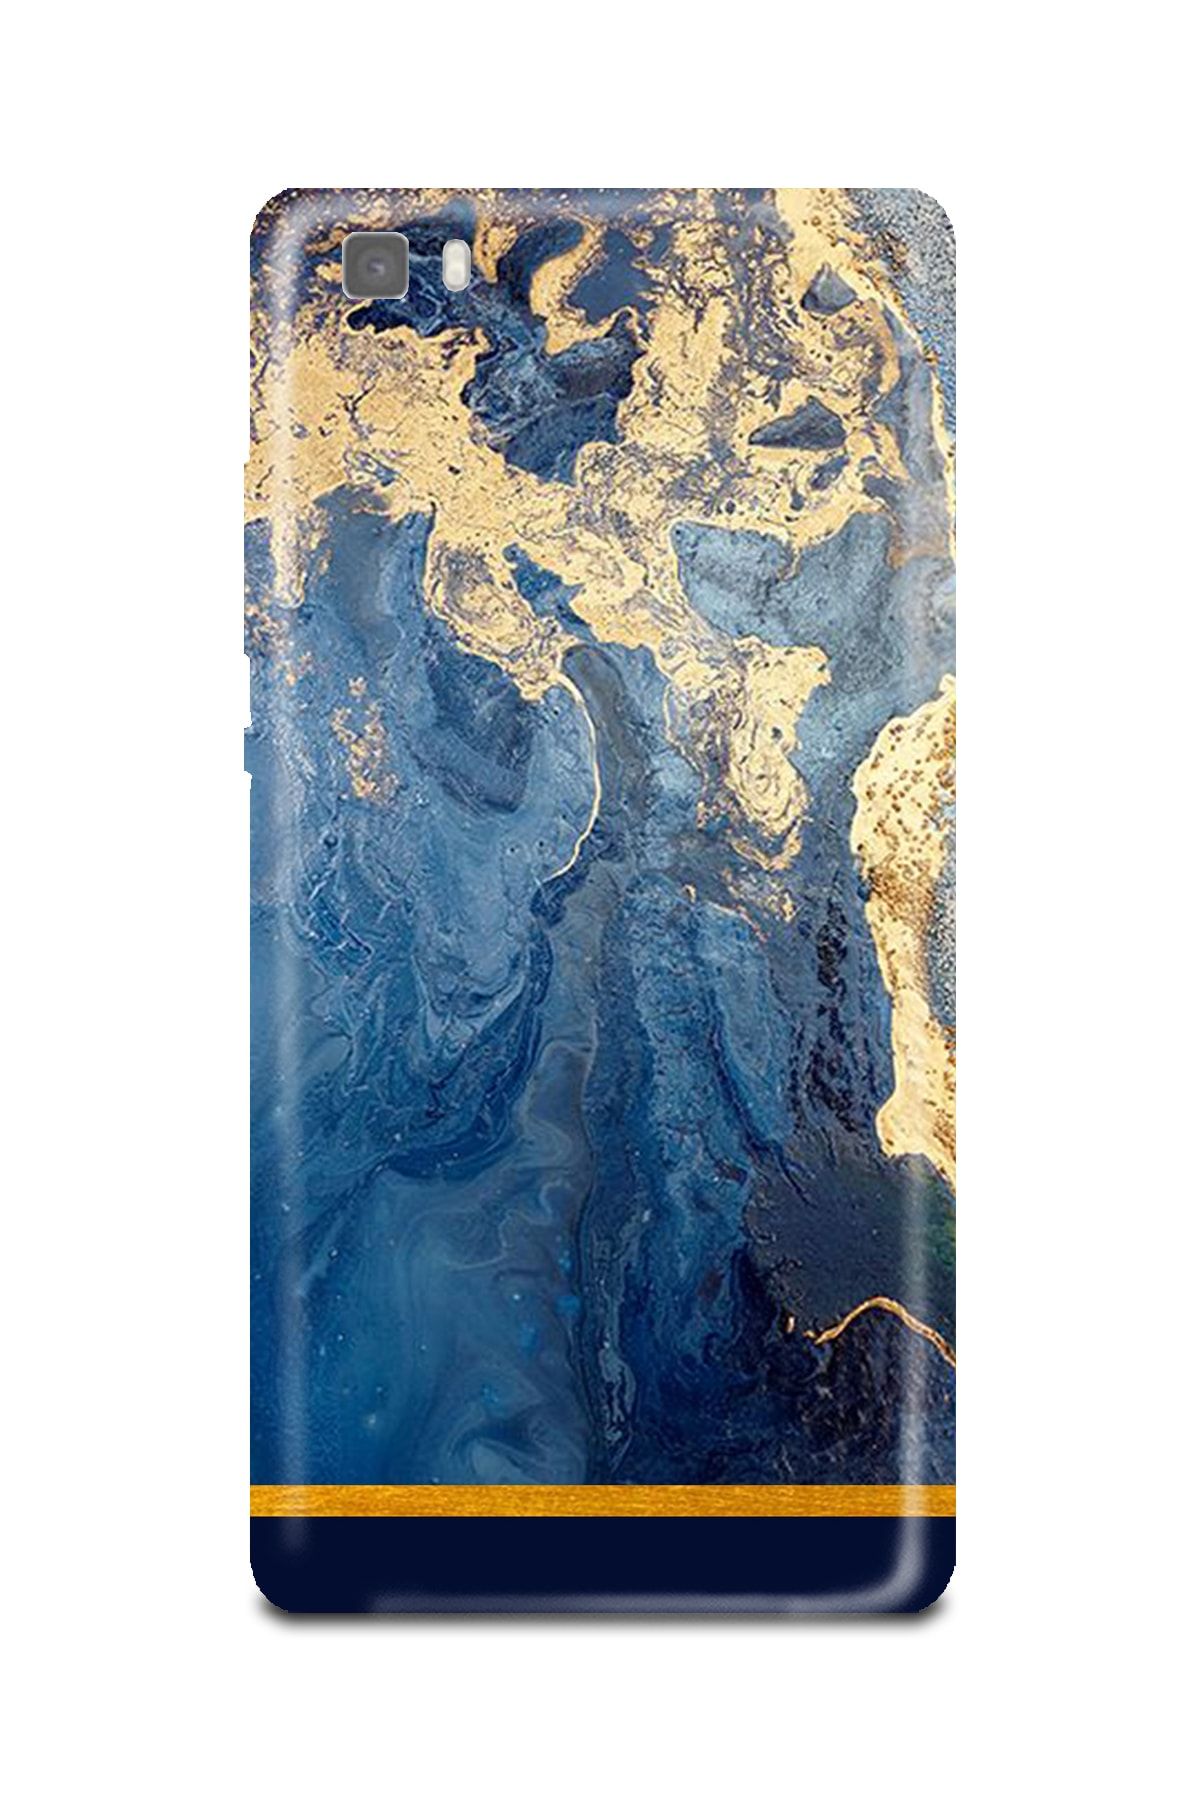 PERAX Huawei P8 Lite Gold Varaklı Mavi Baskılı Telefon Kılıfı Huwp8lite-00001030-47